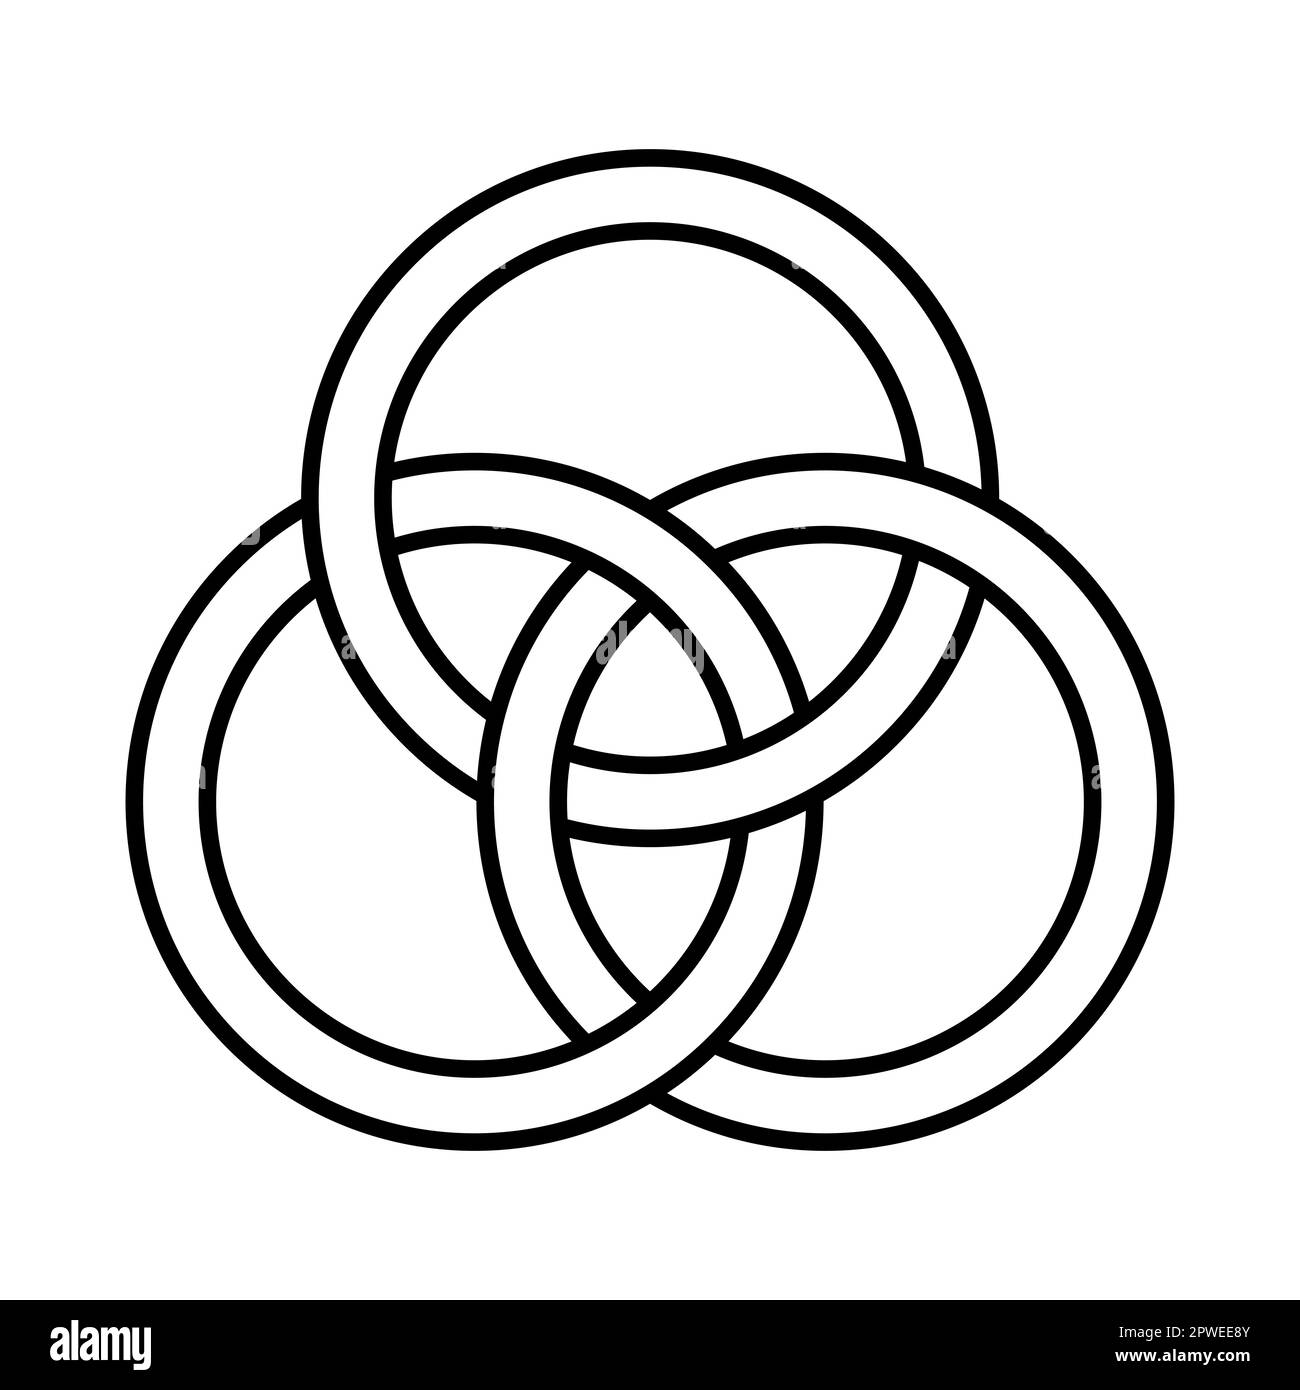 Tre cerchi intrecciati, emblema della Trinità. Un antico simbolo cristiano, che rappresenta l'Unione del Padre, del Figlio Gesù Cristo e dello Spirito Santo. Foto Stock